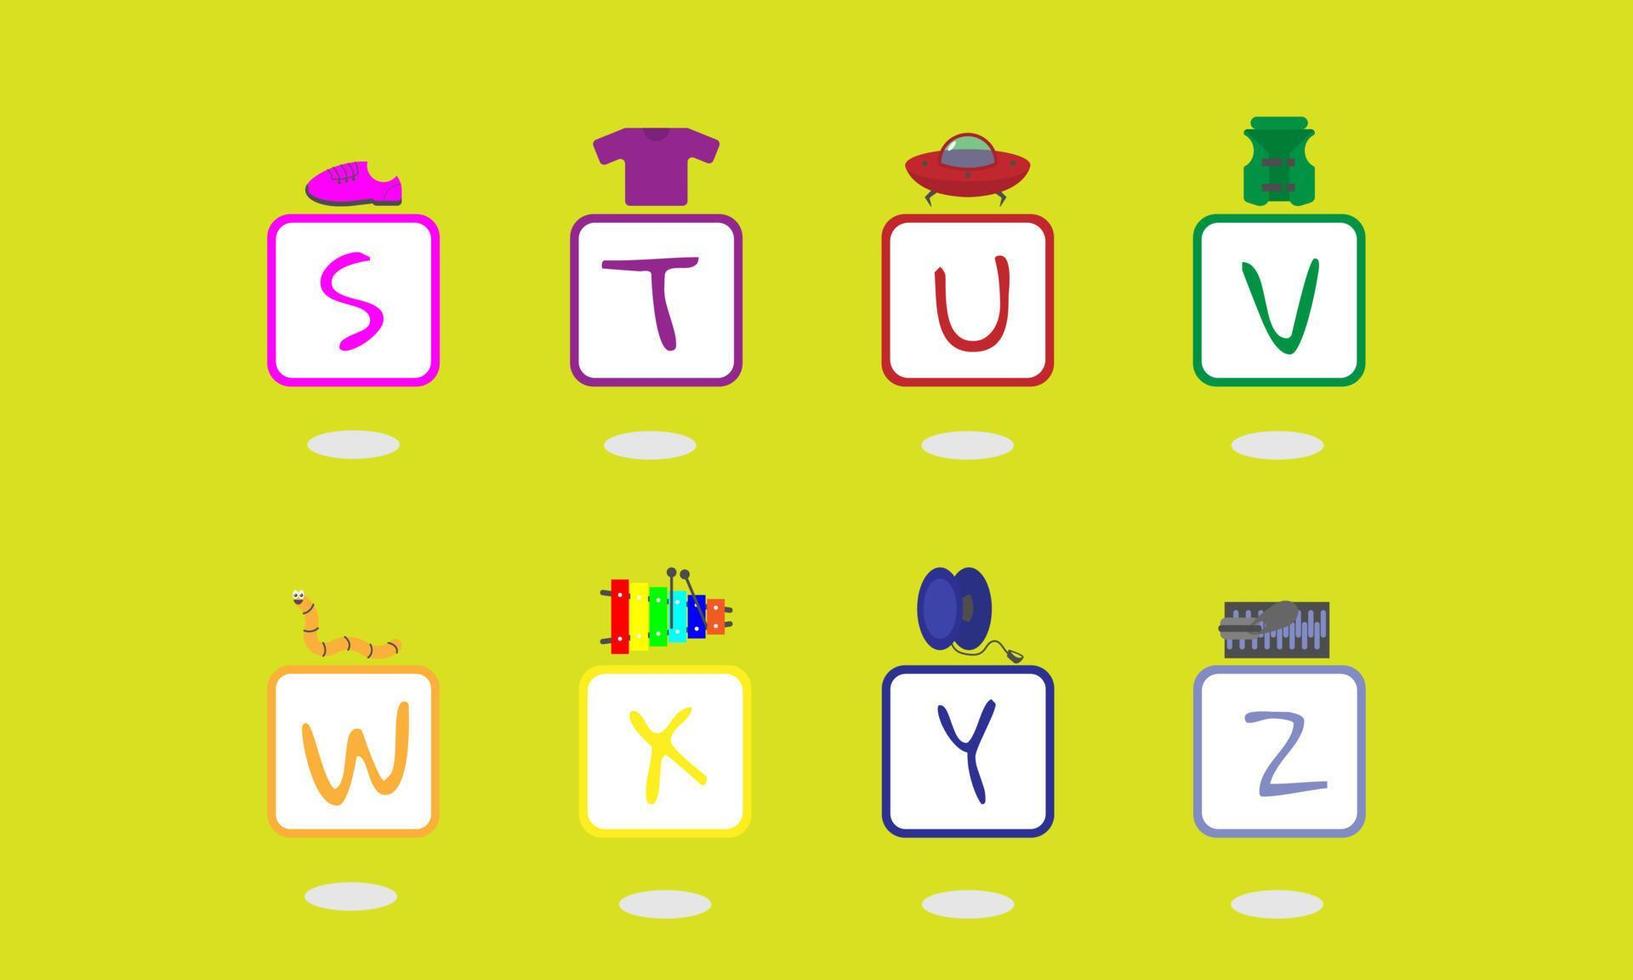 lettres majuscules s à z dans un carré avec un exemple d'objet au-dessus du carré. adapté aux produits pour enfants vecteur